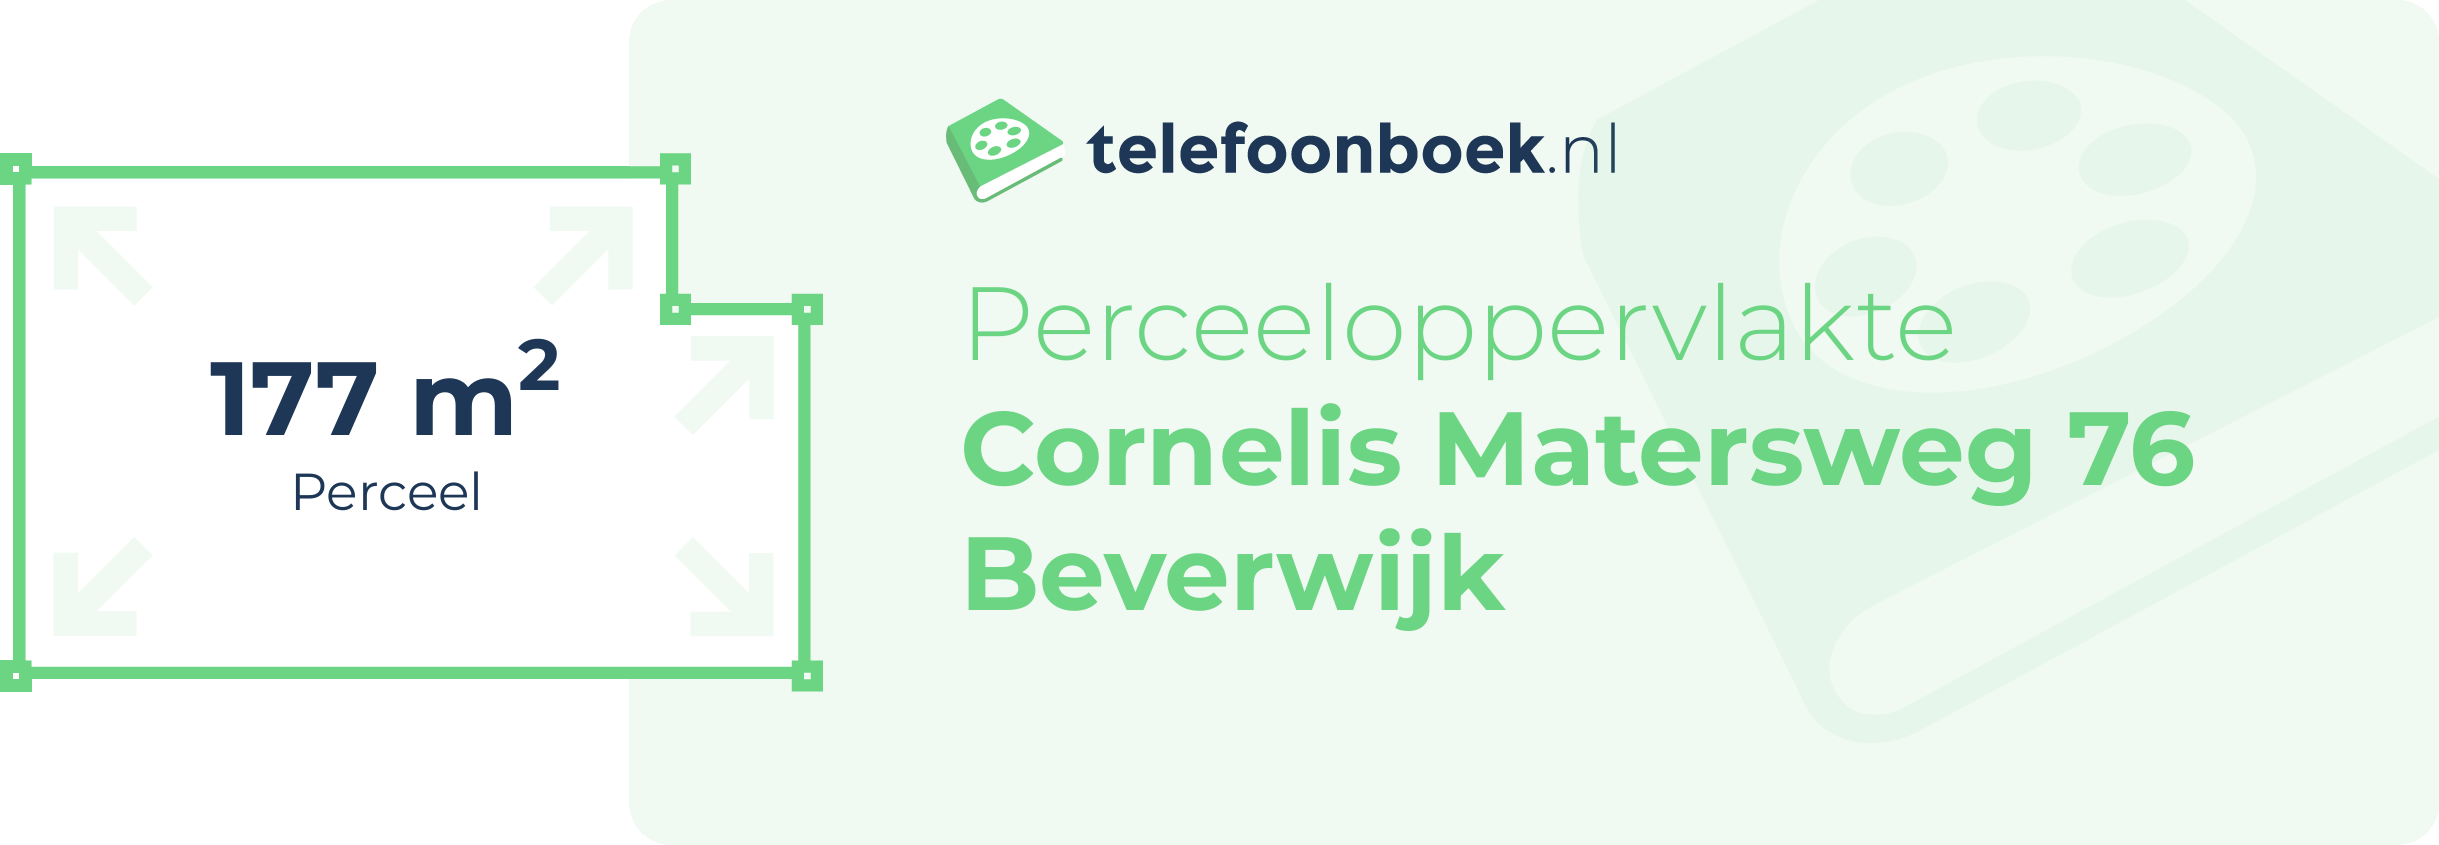 Perceeloppervlakte Cornelis Matersweg 76 Beverwijk